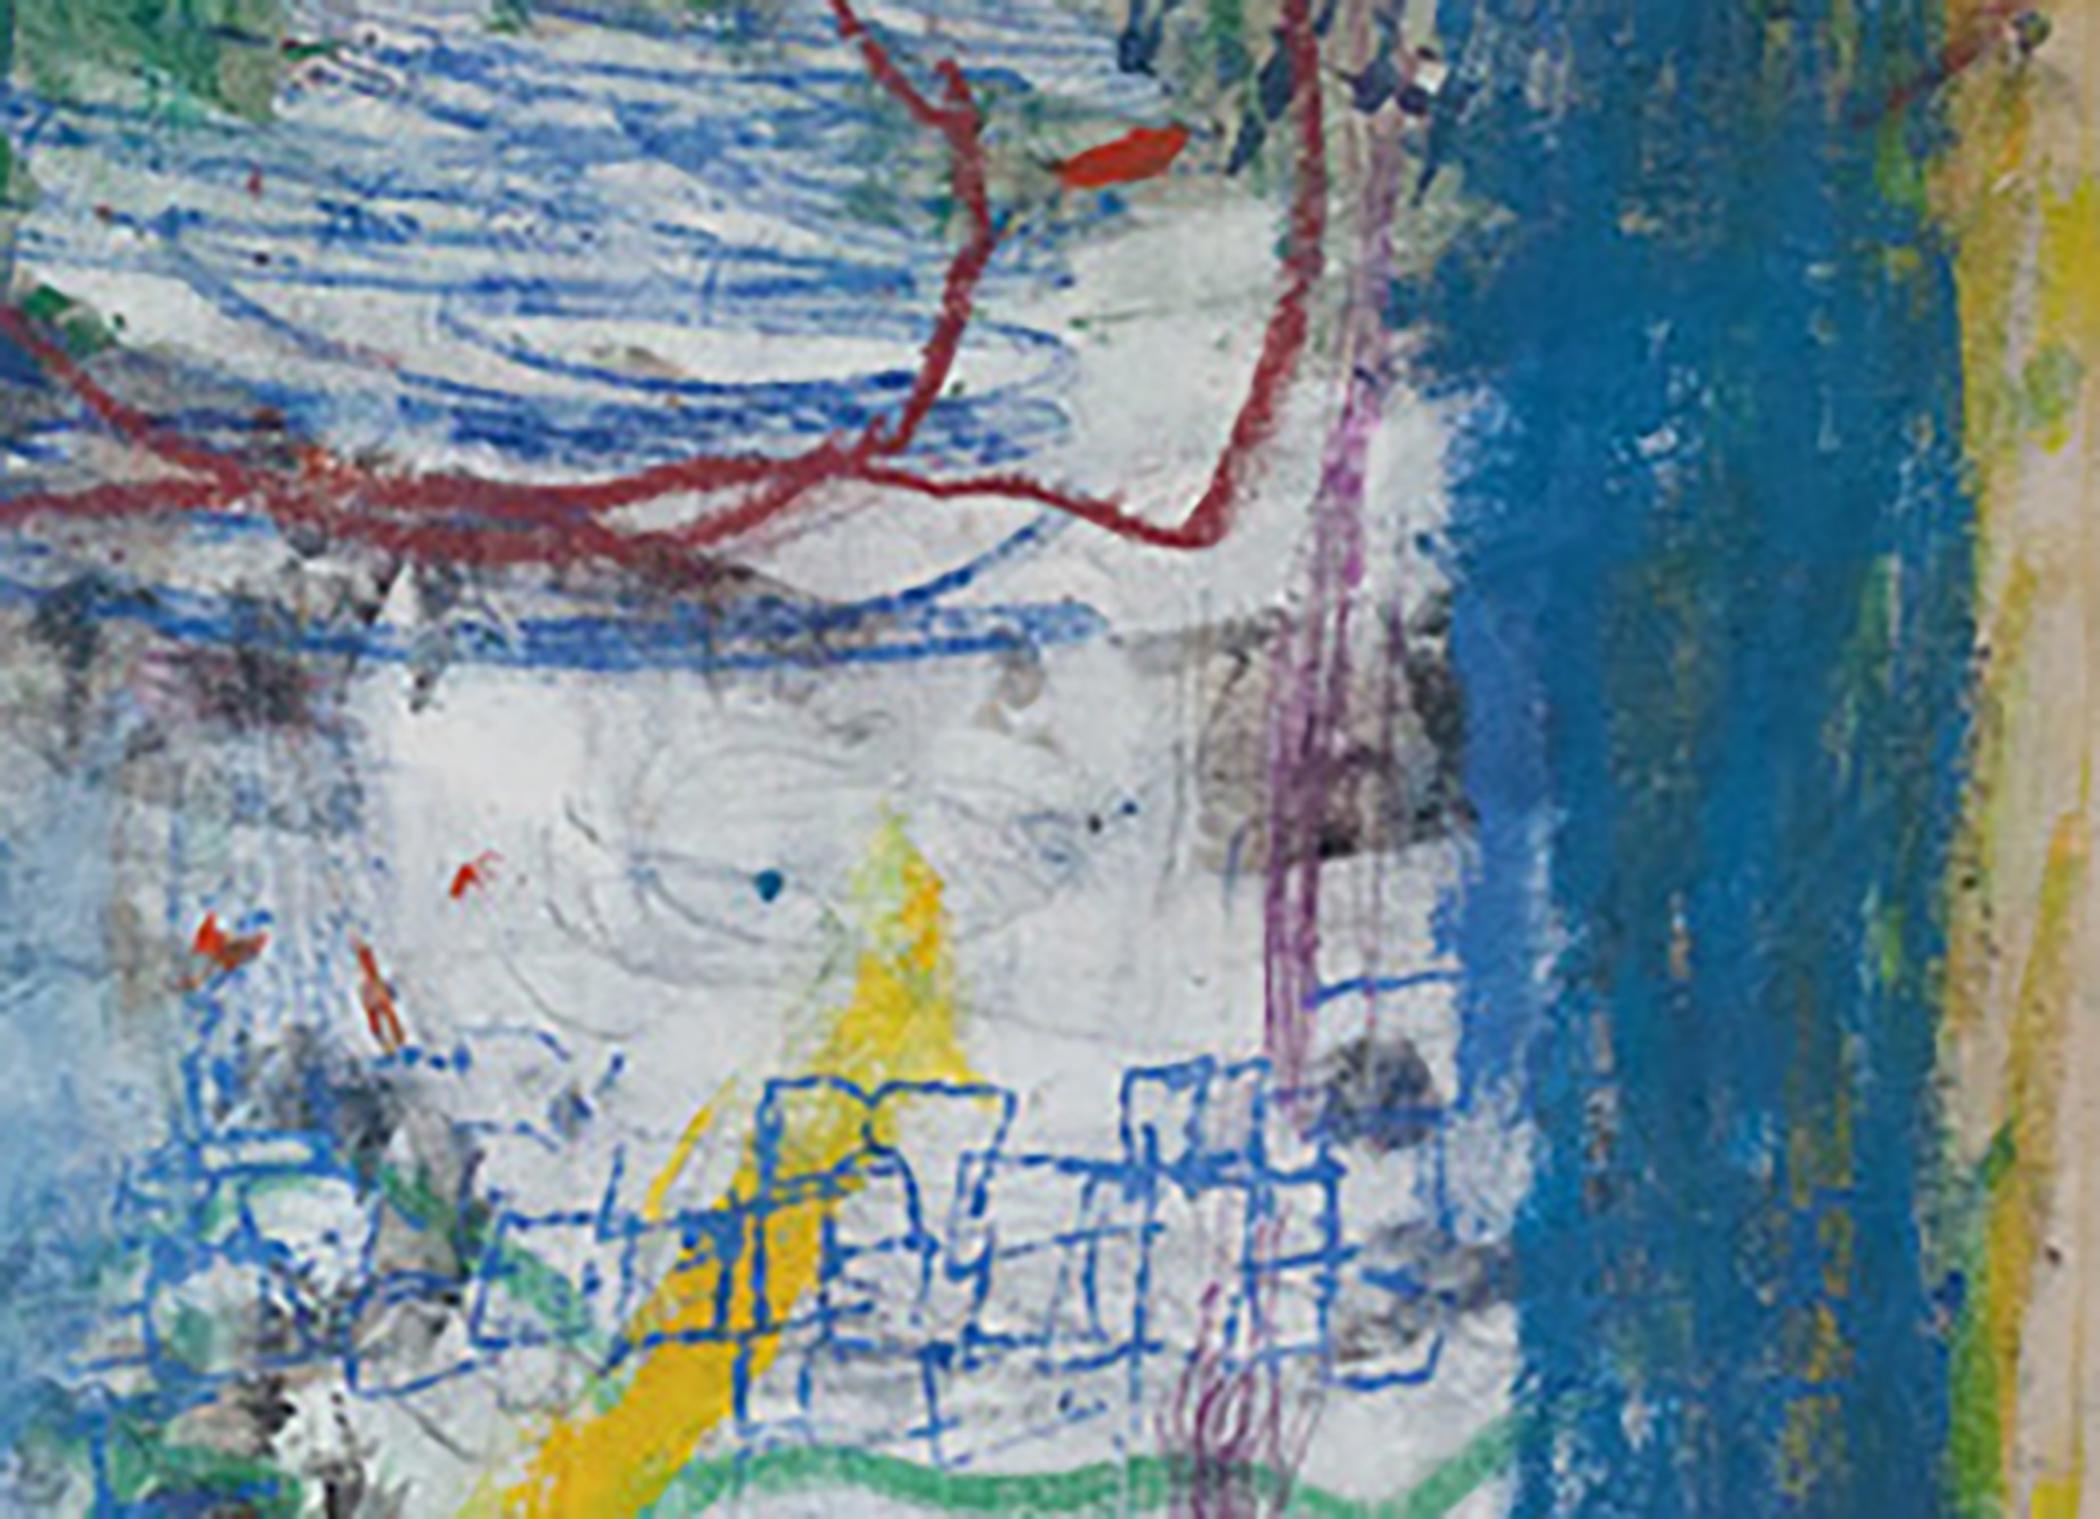 Bernstein, mehrfarbiges abstraktes expressionistisches Ölgemälde auf Leinwand (Abstrakter Expressionismus), Painting, von Margaret Fitzgerald